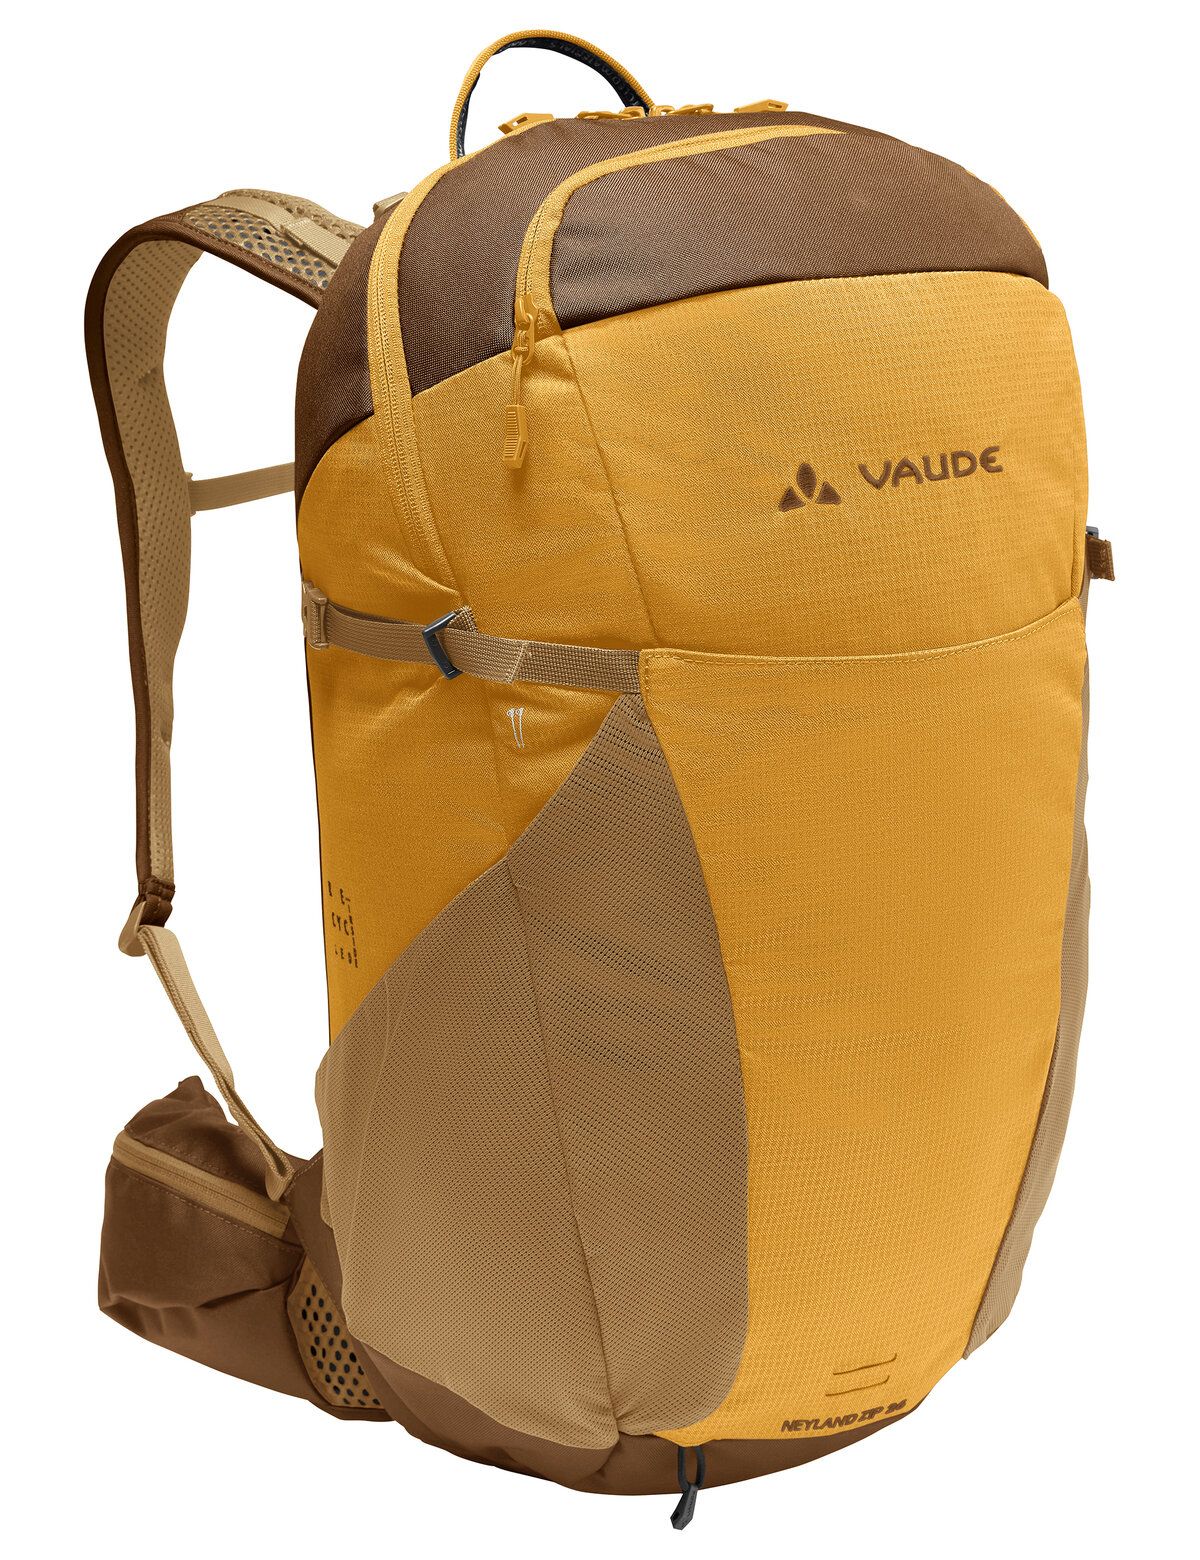 Vaude  Neyland Zip 26 - Wanderrucksack - Gelb (Burnt Yellow)